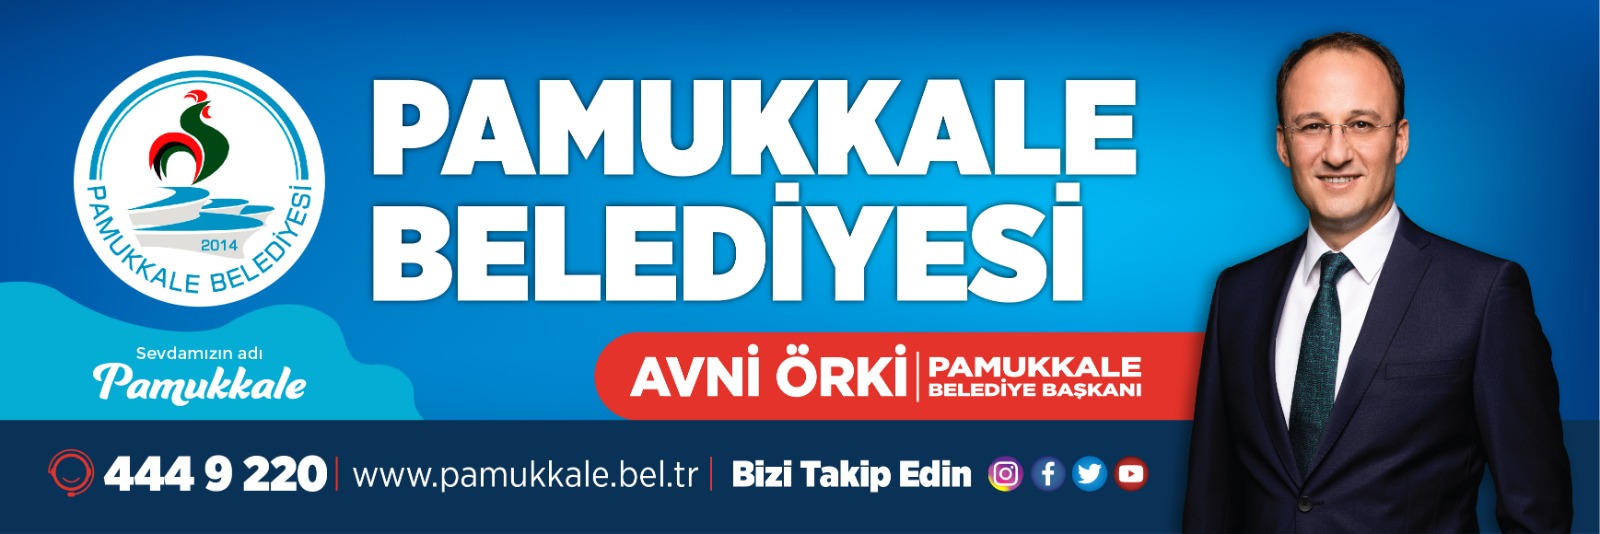 Pamukkale Belediyesi-2